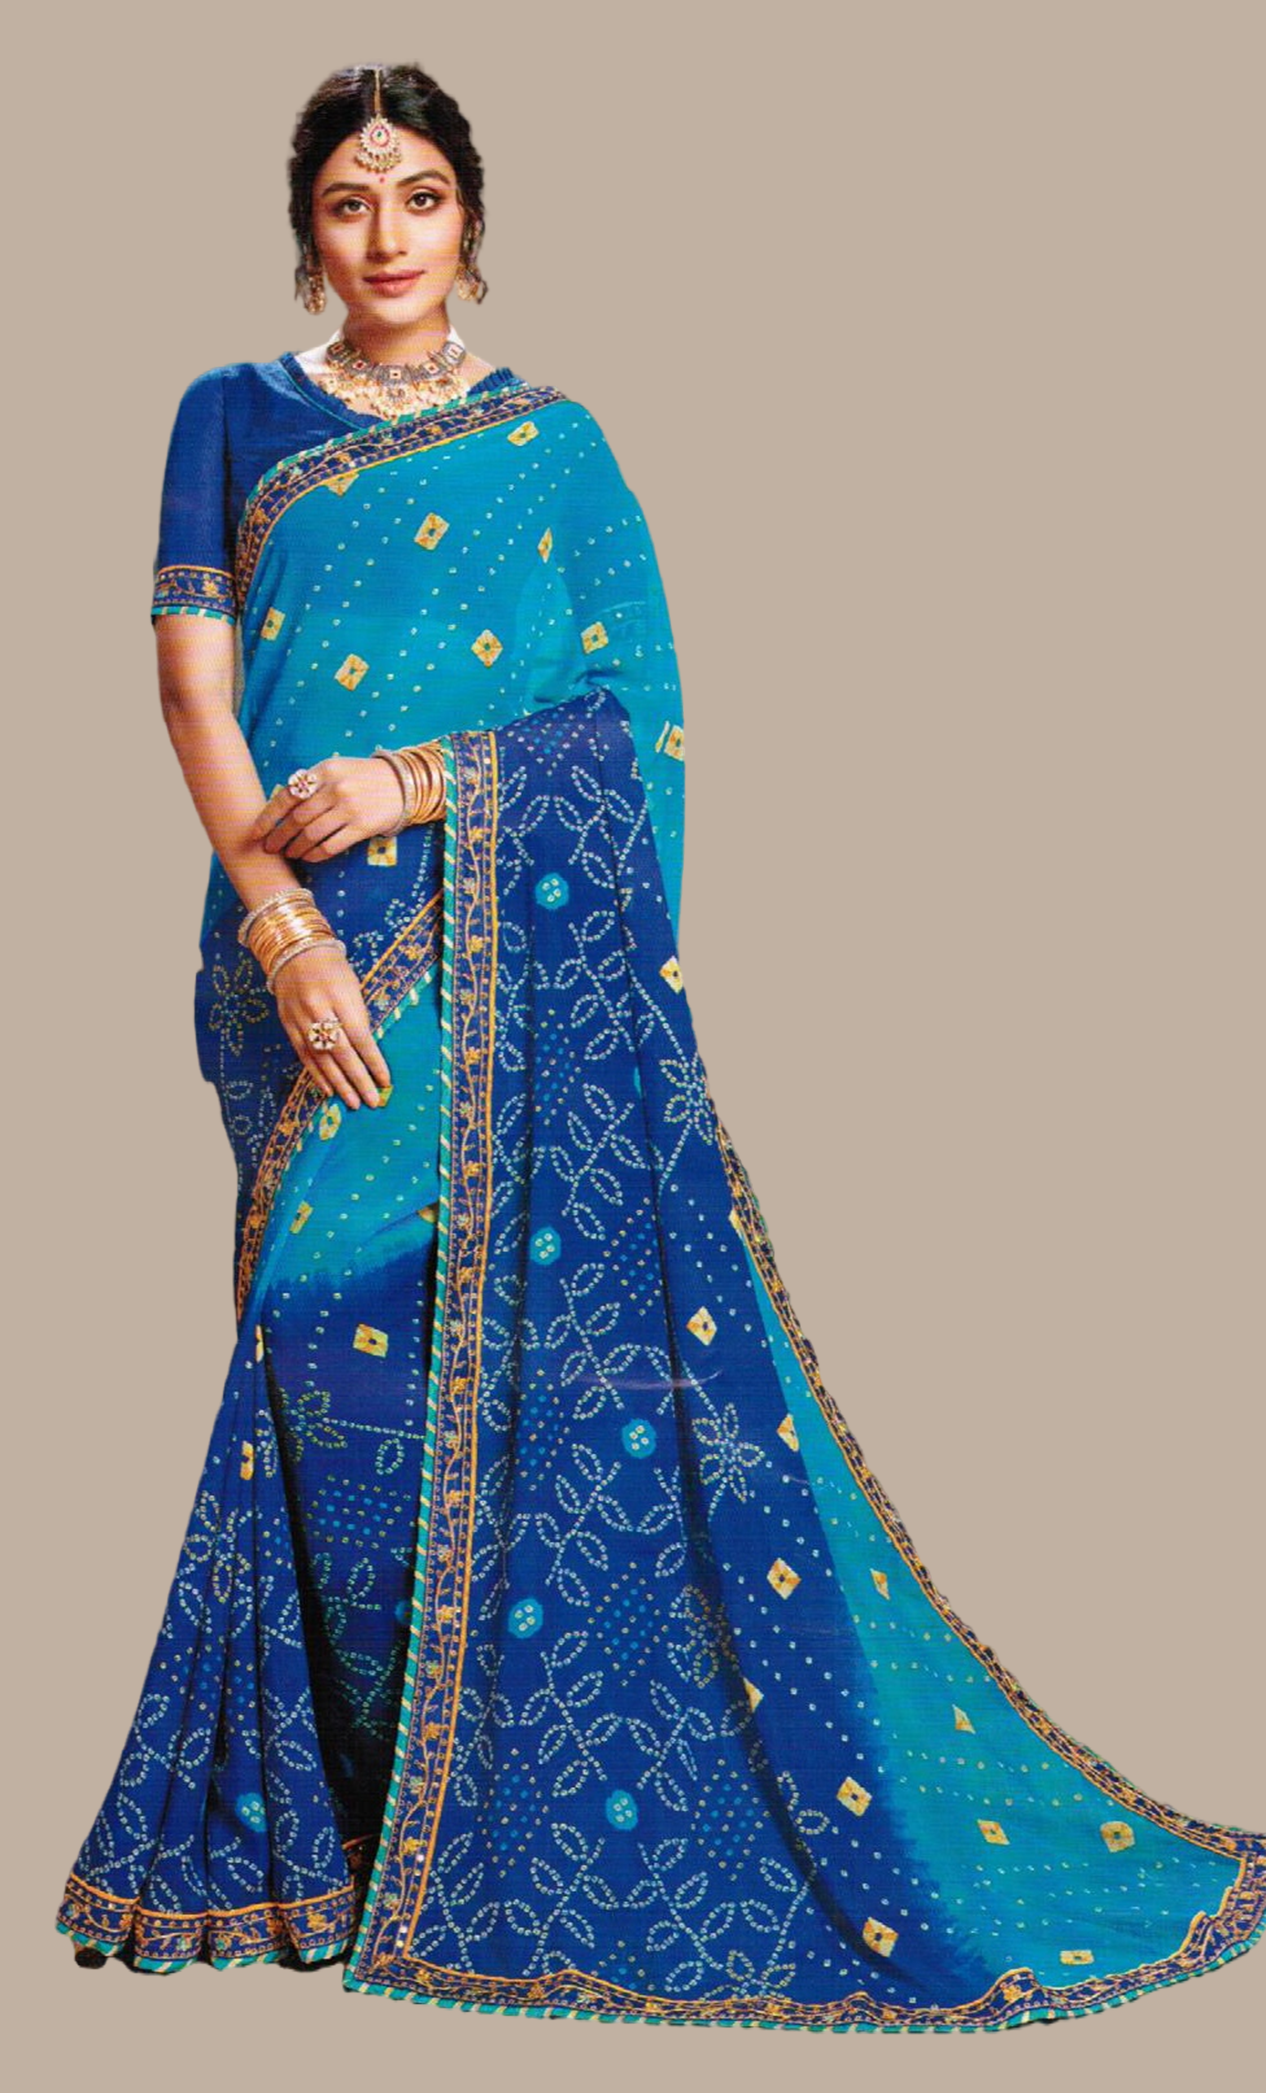 Bright Blue Bandhani Printed Sari